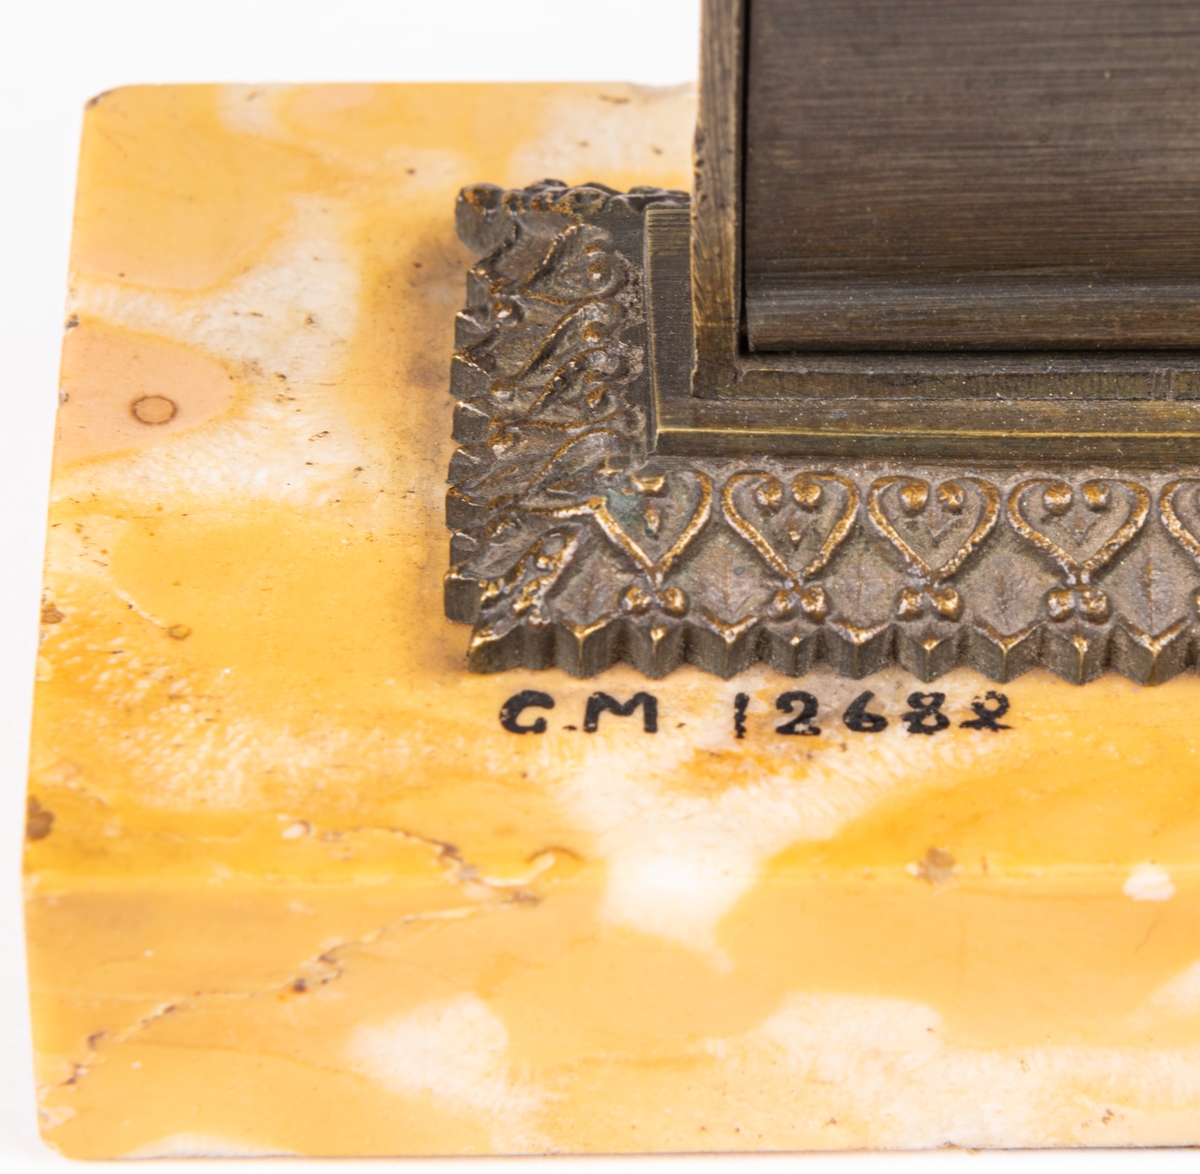 Acc.Almanacka av gjutet järn, monterad på gul marmorplatta, 1829.

Lappkort. Datumtavla, almanacka på bronsplatta fästad på gul marmorplatta. Från 1829.
Fransk?